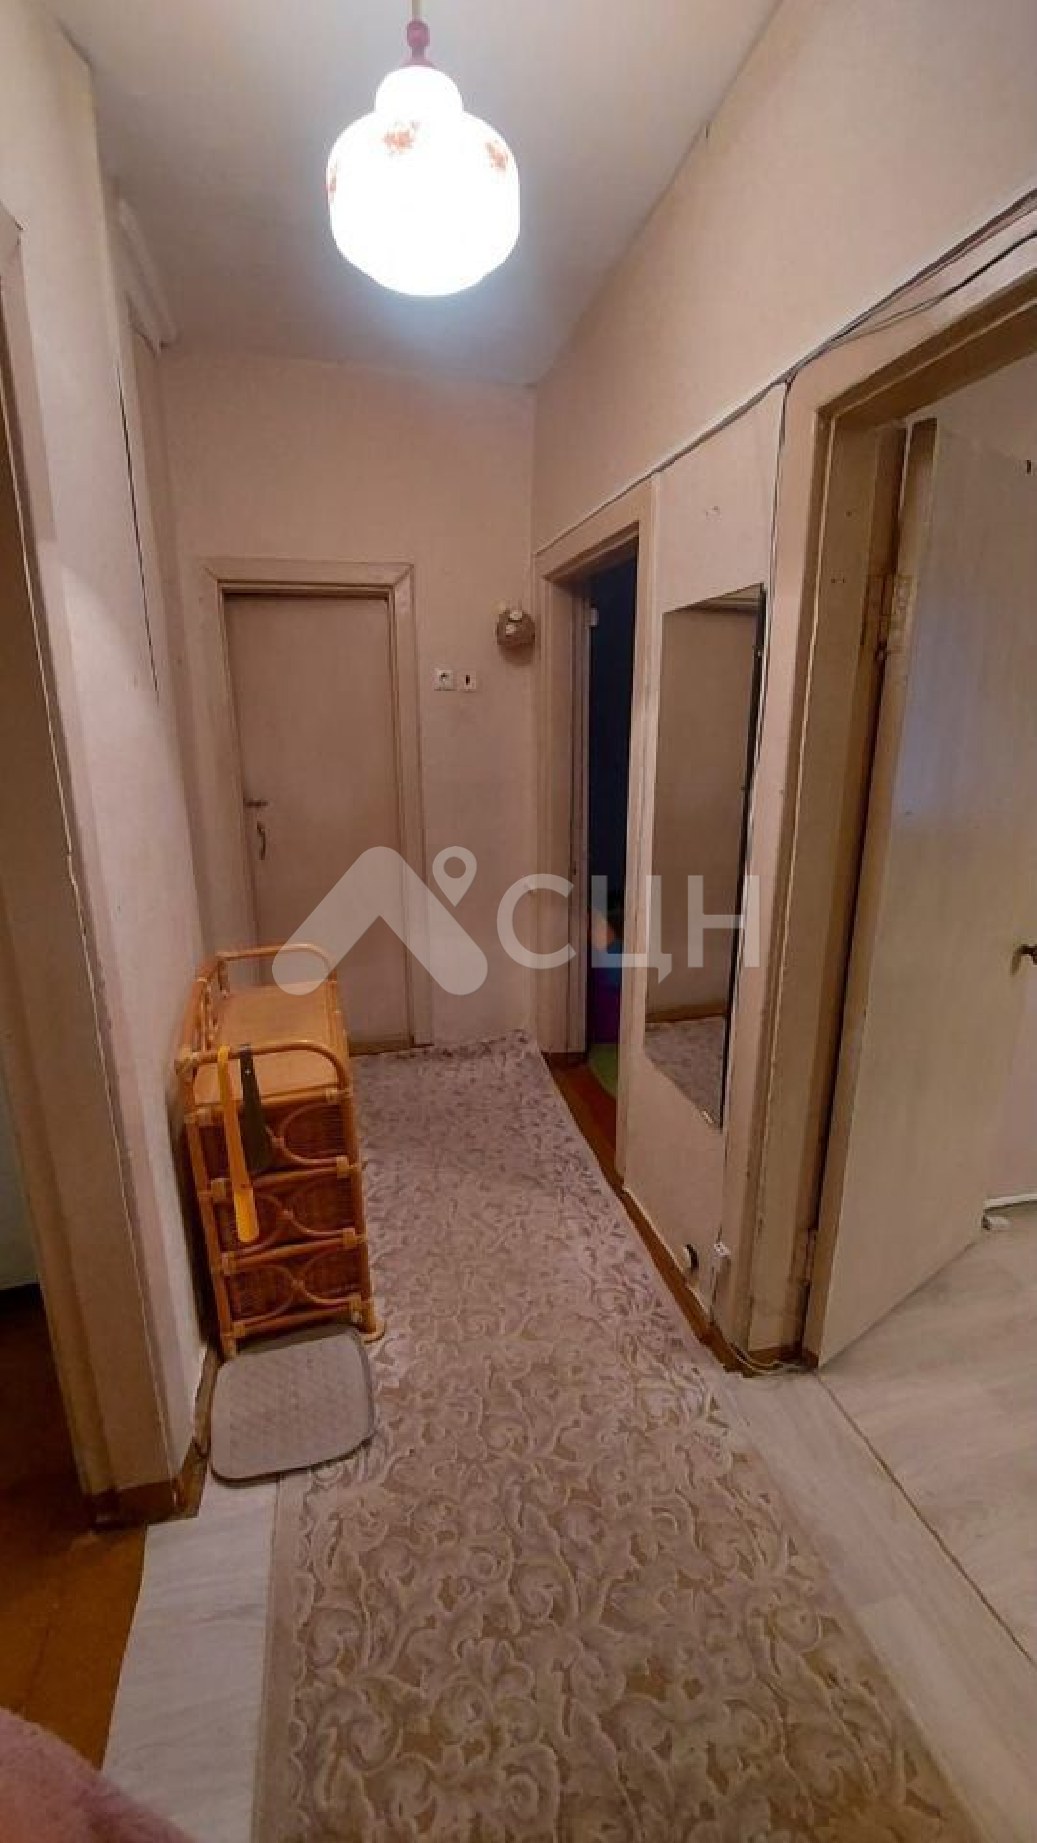 циан саров квартиры
: Г. Саров, улица Победы, 17, 2-комн квартира, этаж 2 из 2, продажа.